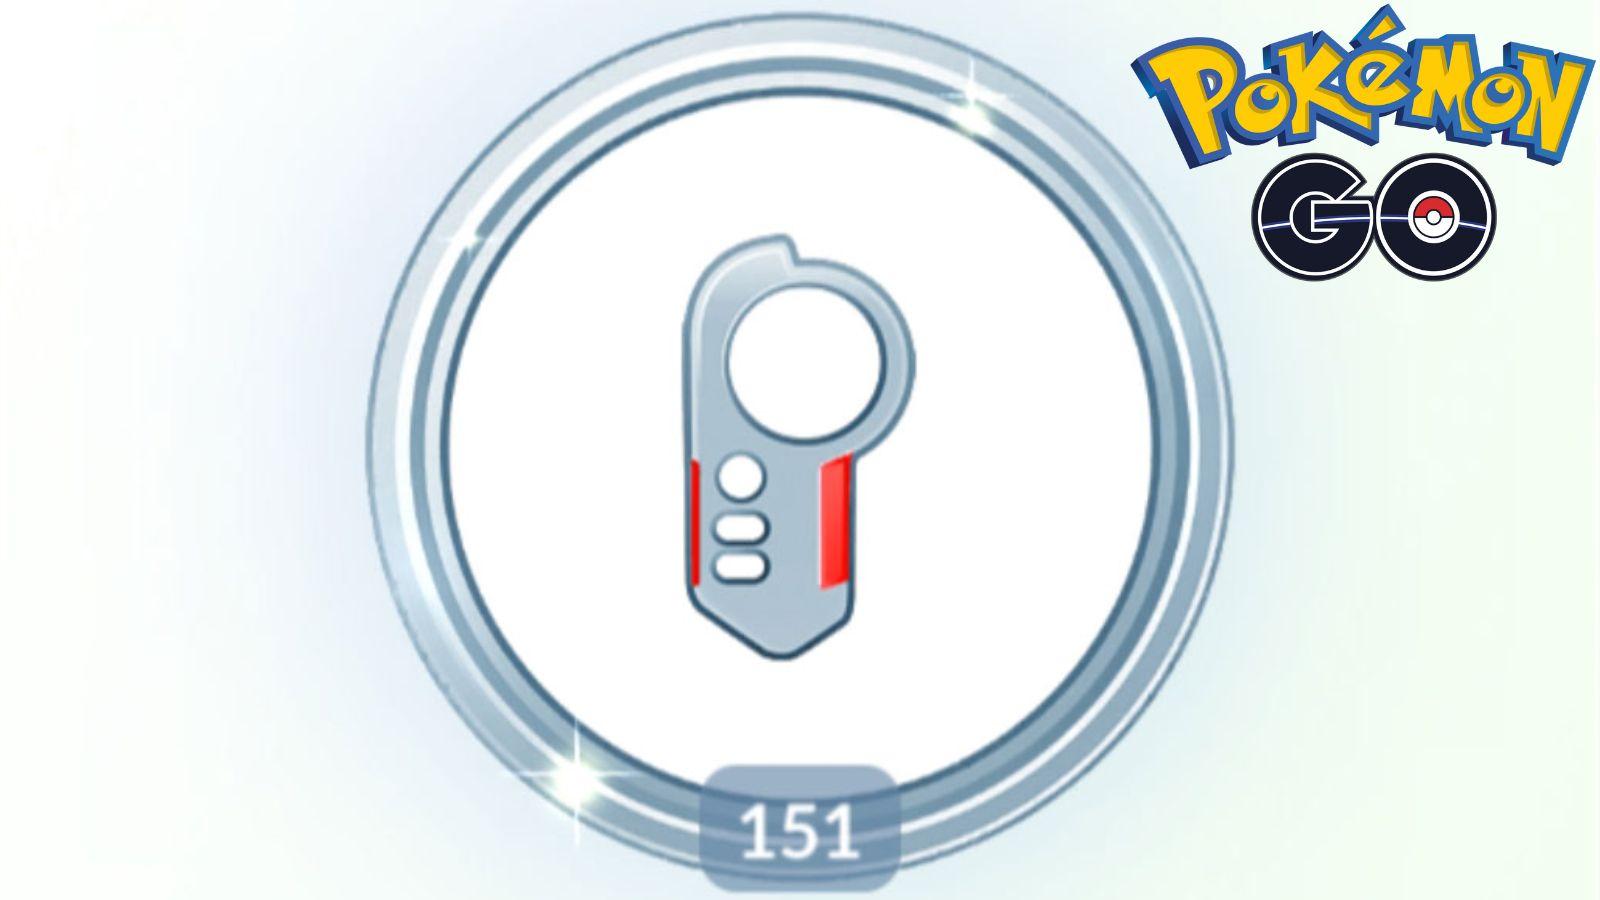 Pokemon Go All In One #151 Masterwork Research tasks & rewards